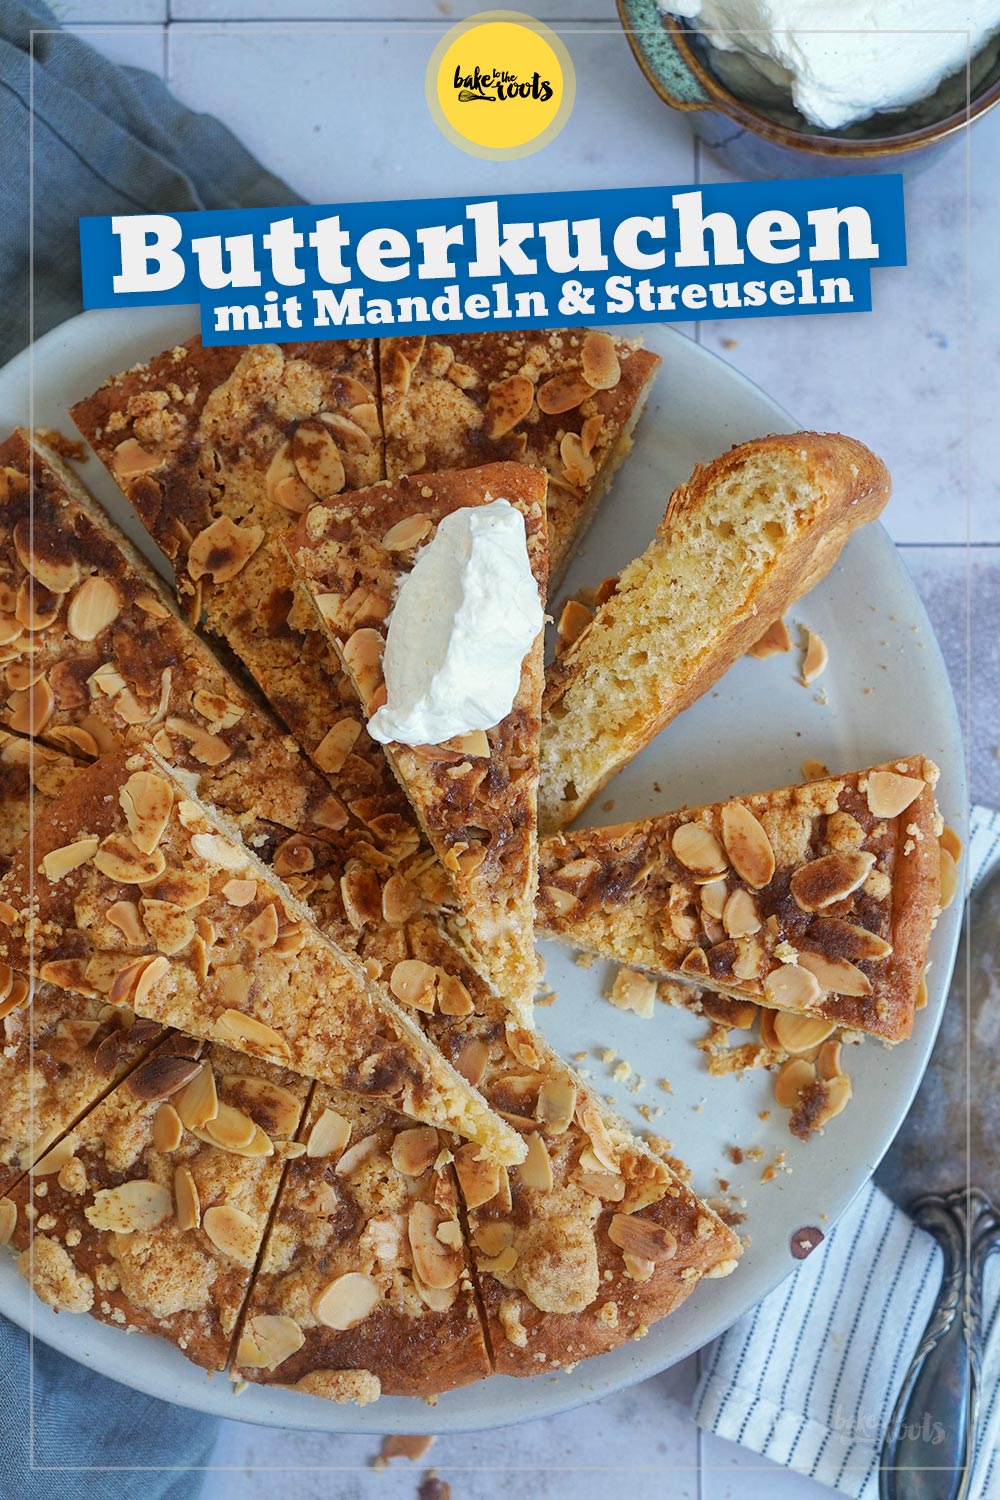 Blitz Butterkuchen mit Streuseln & Mandeln | Bake to the roots